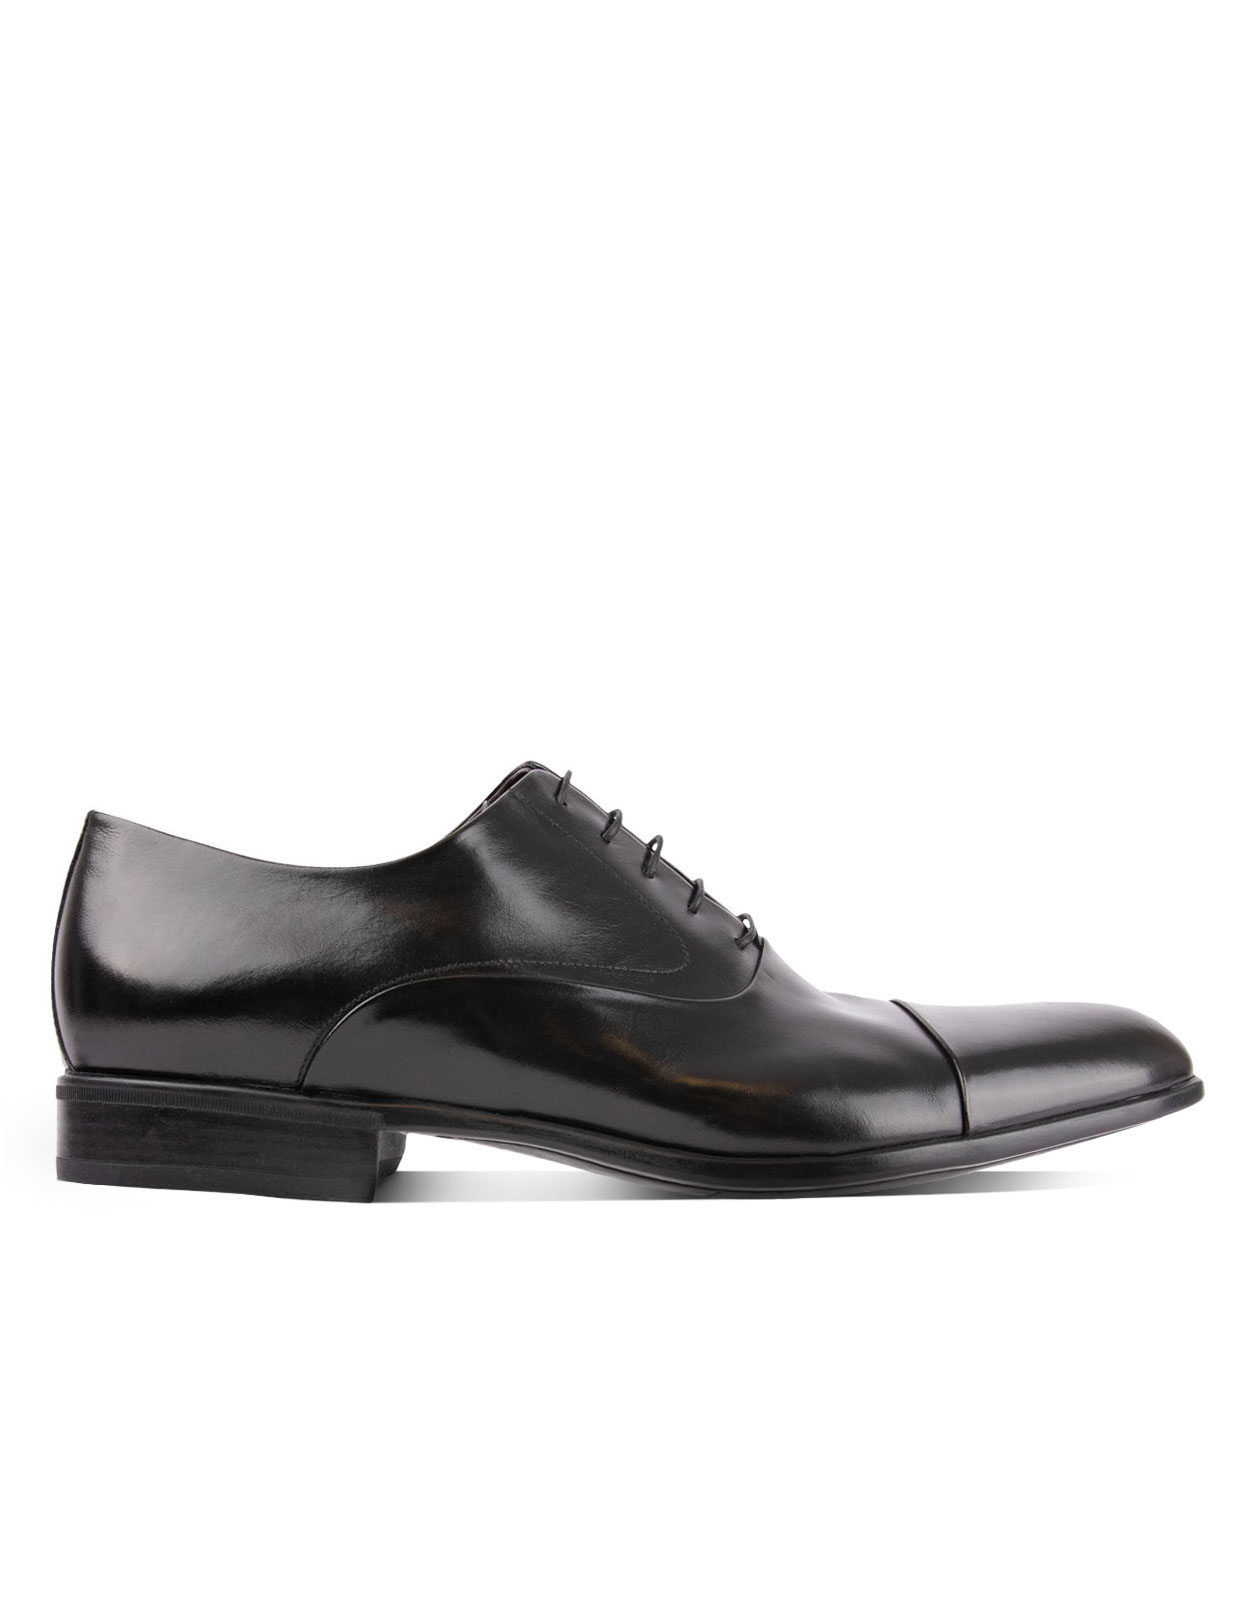 Bruges Oxford Shoe Black Stl 8